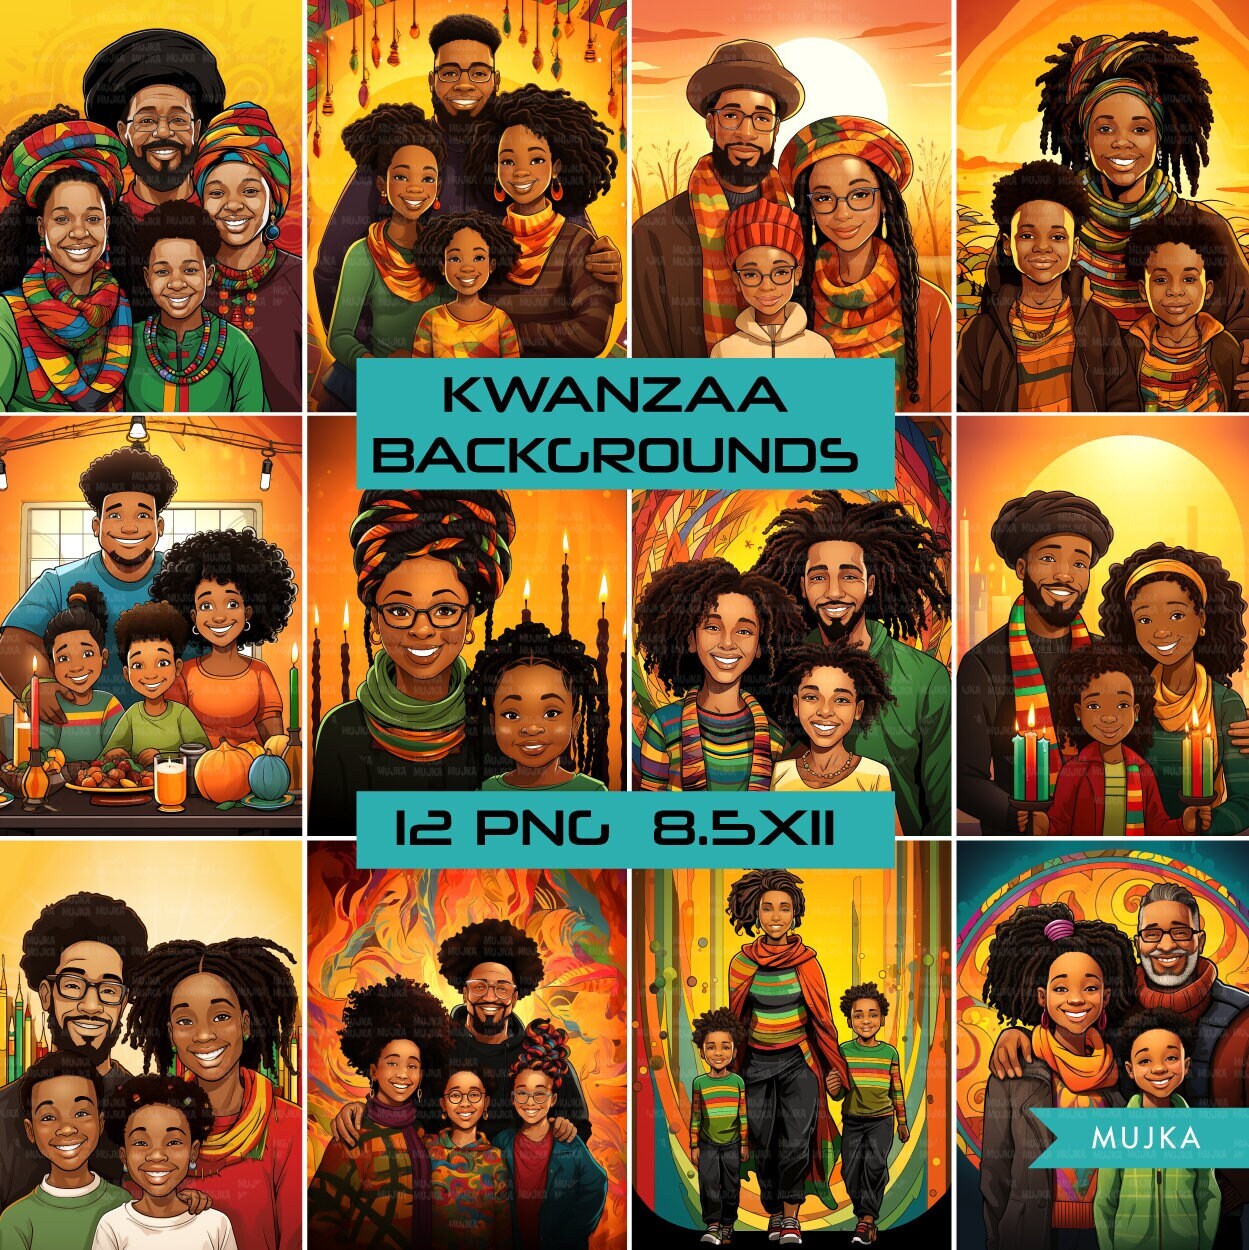 Kwanzaa digital papers, Kwanzaa backgrounds, Kwanzaa digital patterns, –  MUJKA CLIPARTS